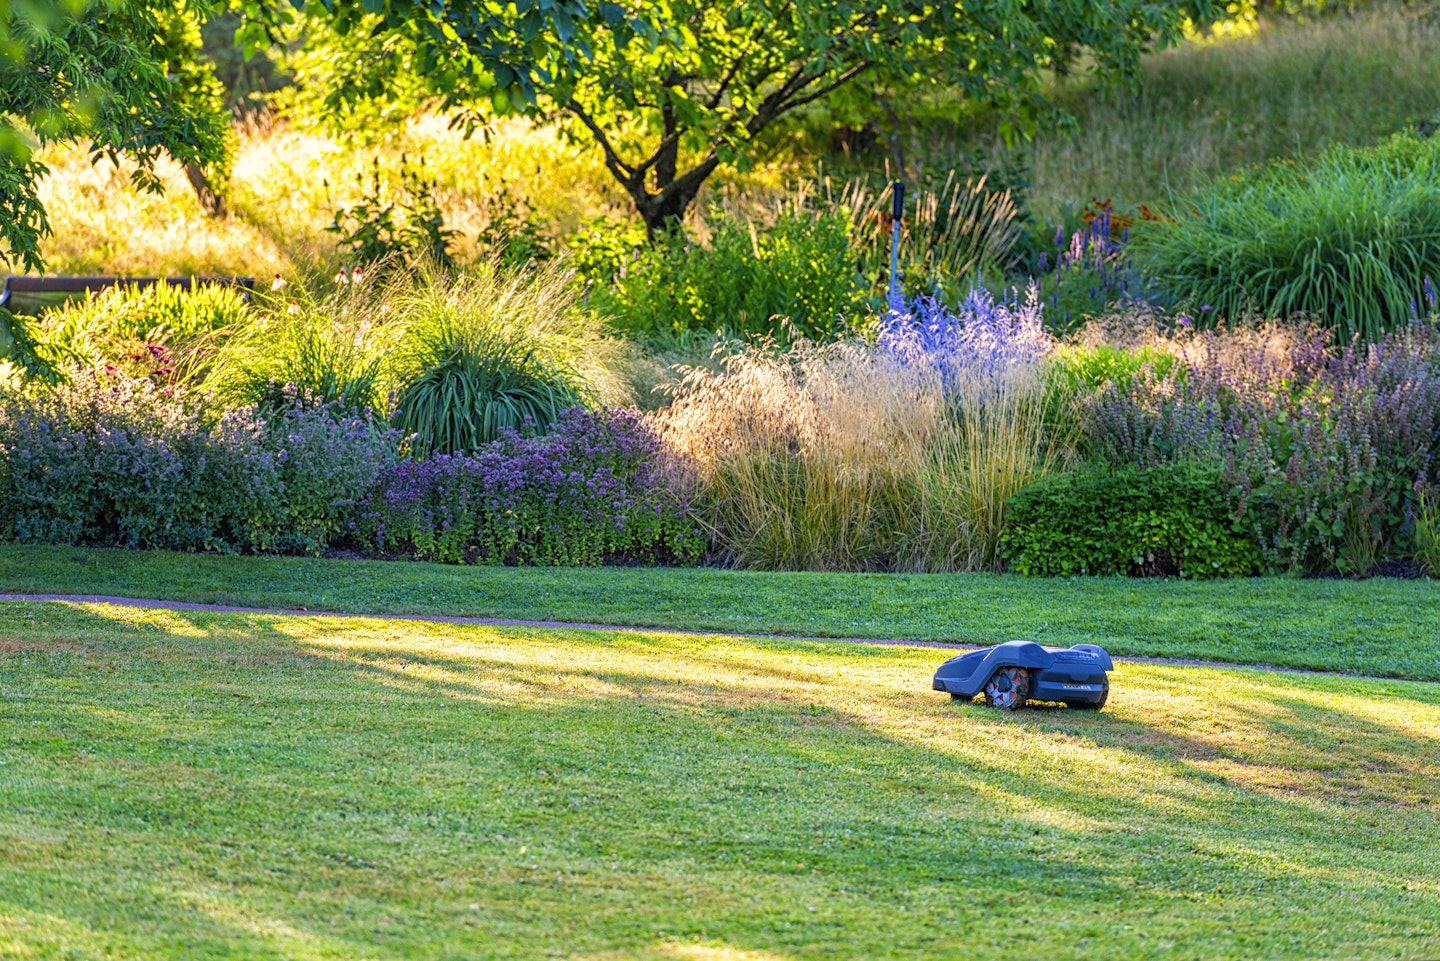 robot lawn mower cutting grass